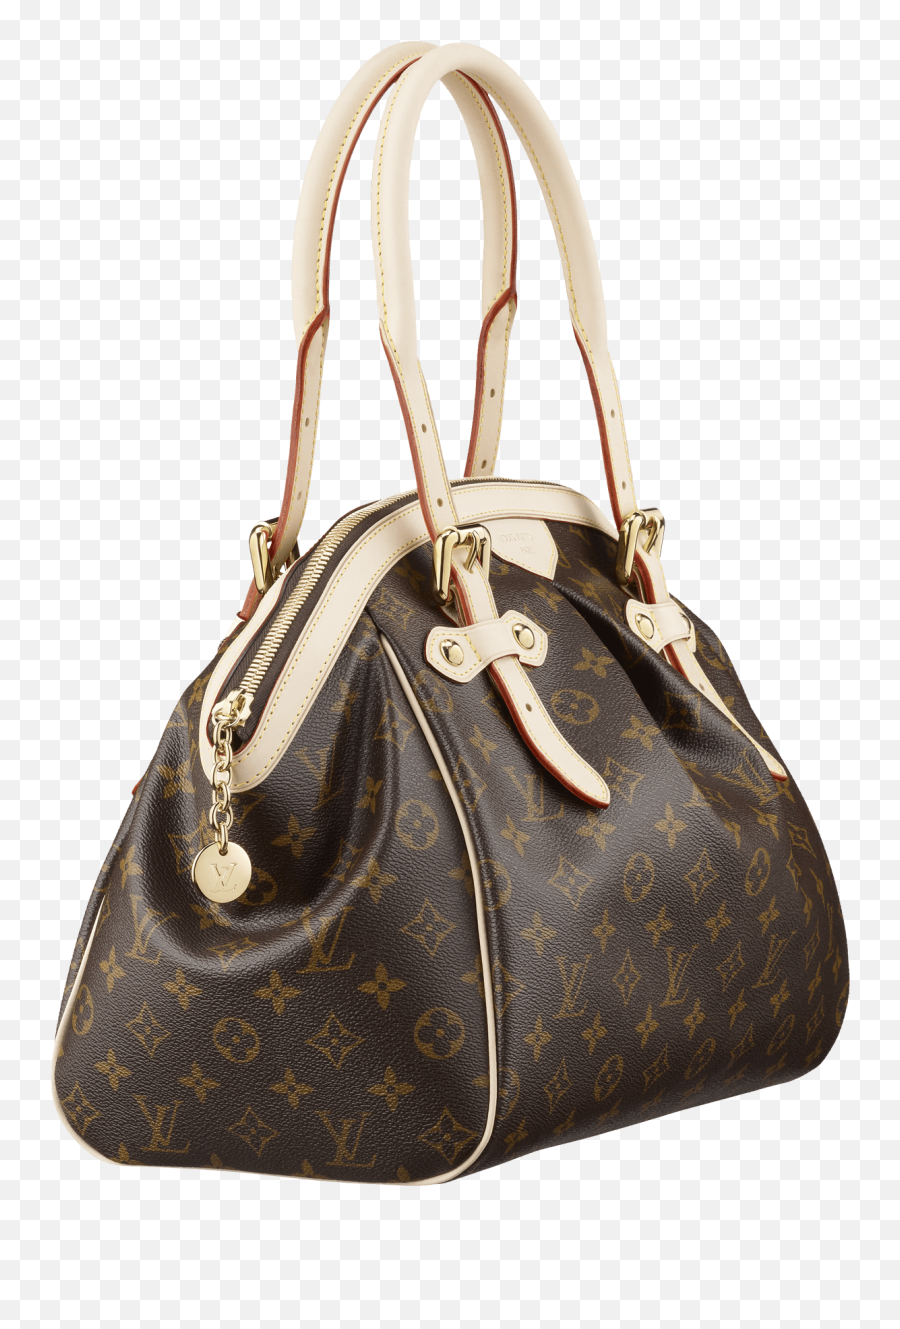 Louis Vuitton Women Bag Png Image - Womens Purse Png Emoji,Girl Lipstick Arrow Purse Emoji